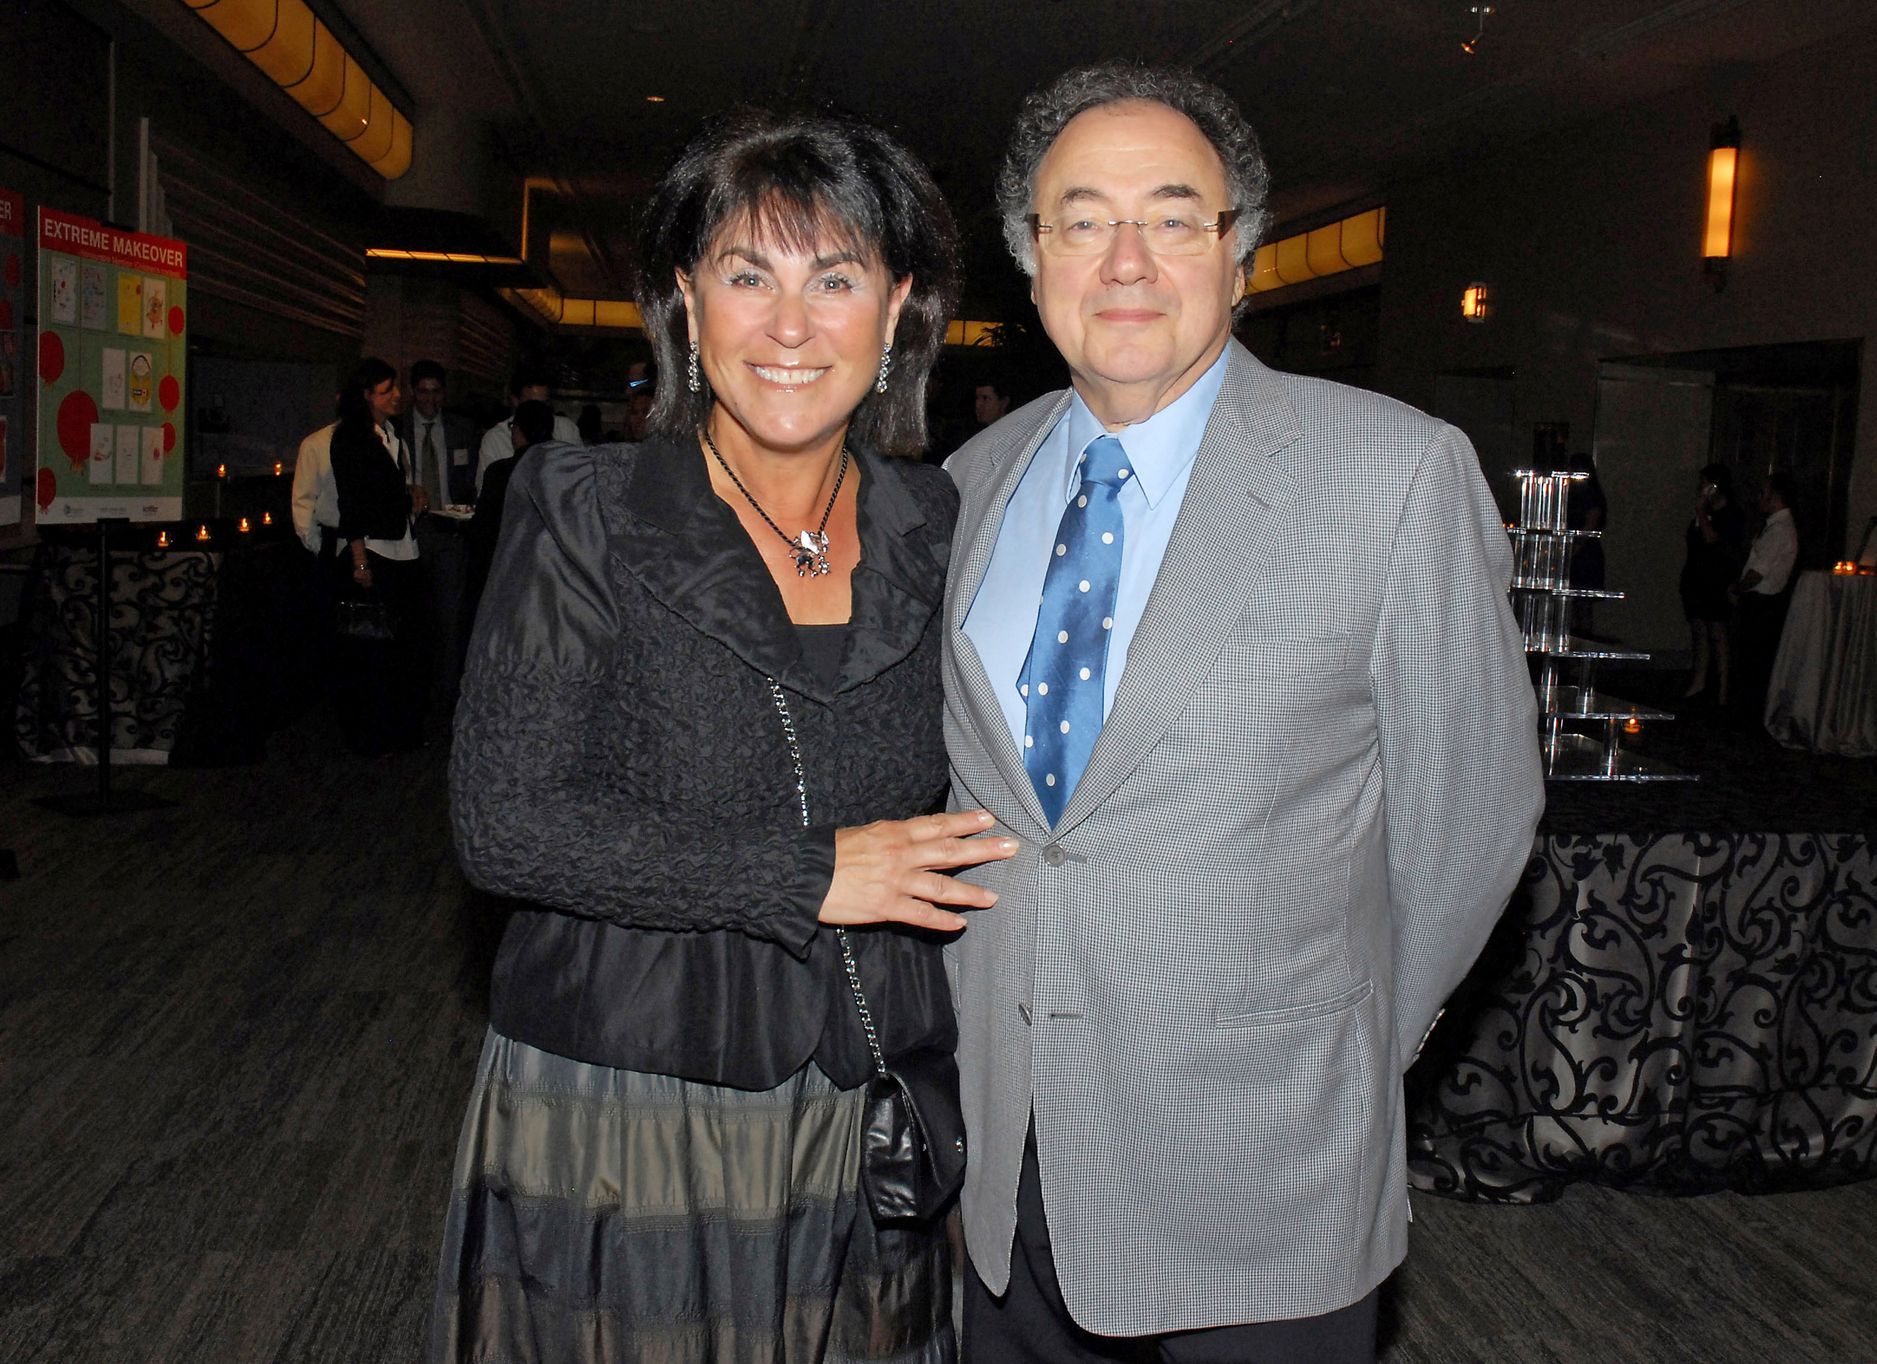 Záhadná smrt kanadského miliardářského páru. Neoběsili se, byla to nájemná vražda, tvrdí jejich děti